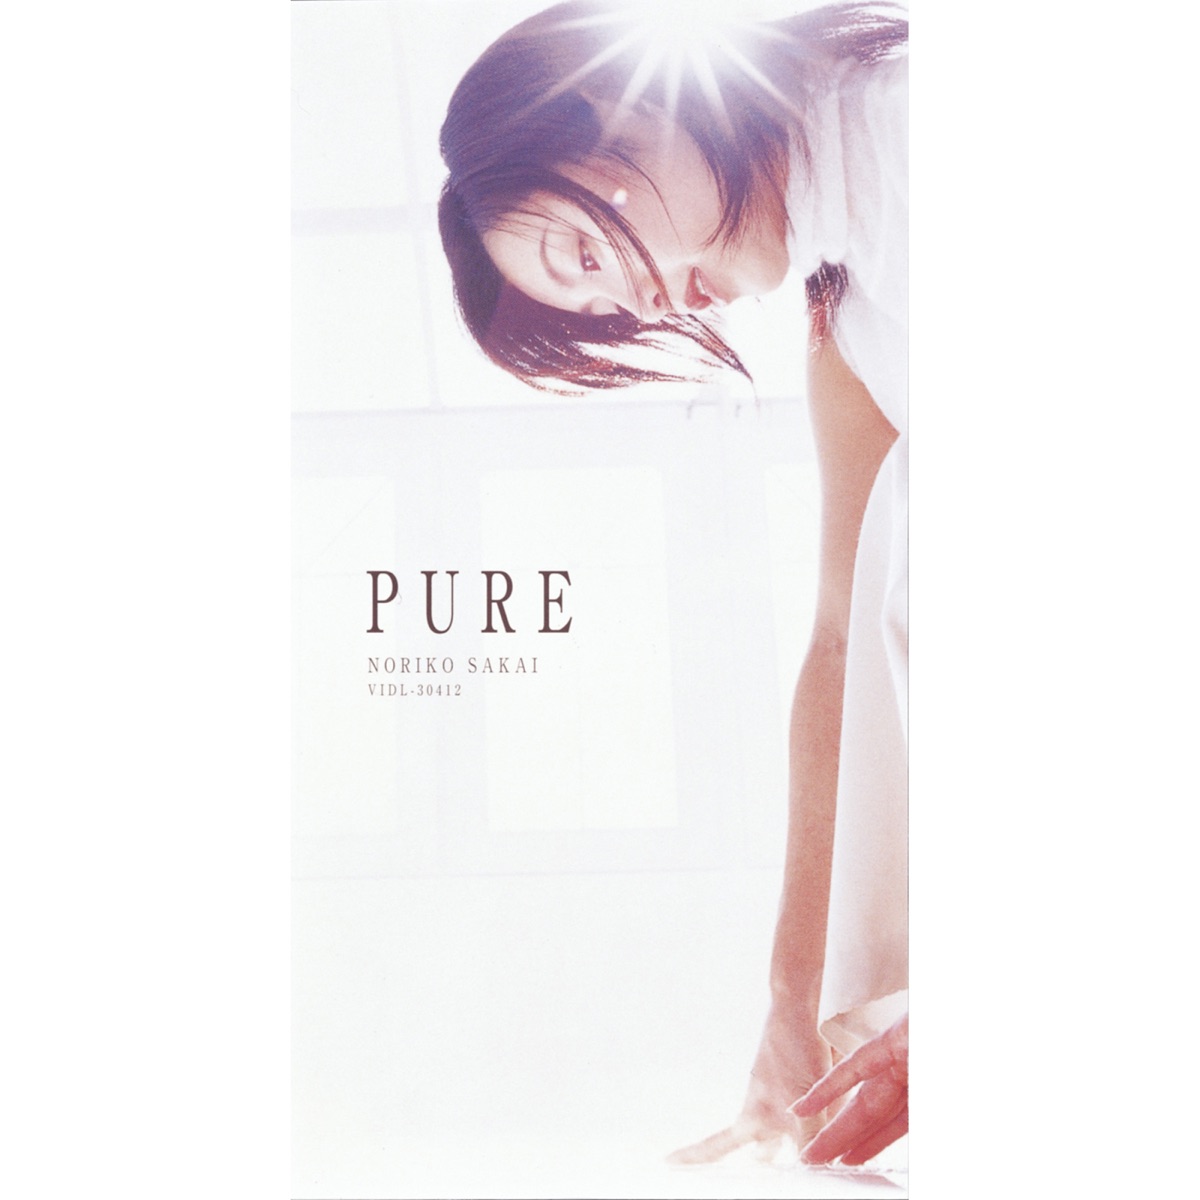 酒井法子 - PURE - EP (1999) [iTunes Plus AAC M4A]-新房子